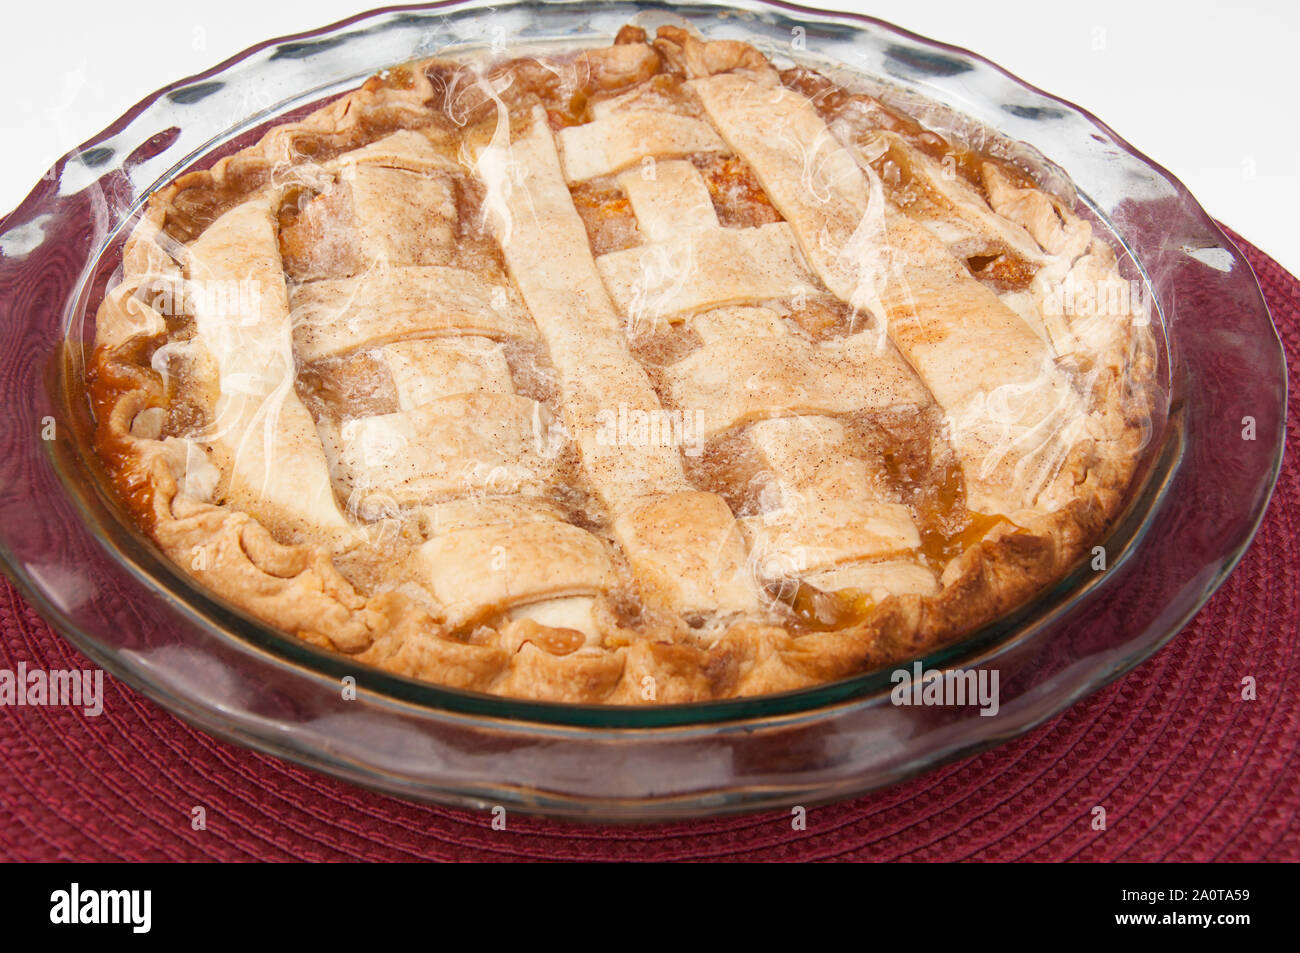 Hausgemachte peach Pie ganze uncut in einem Glas pie Pan und Burgund Unterlage. Frisch gebackene Dessert heiß aus dem Ofen mit Dampf steigt. Stockfoto